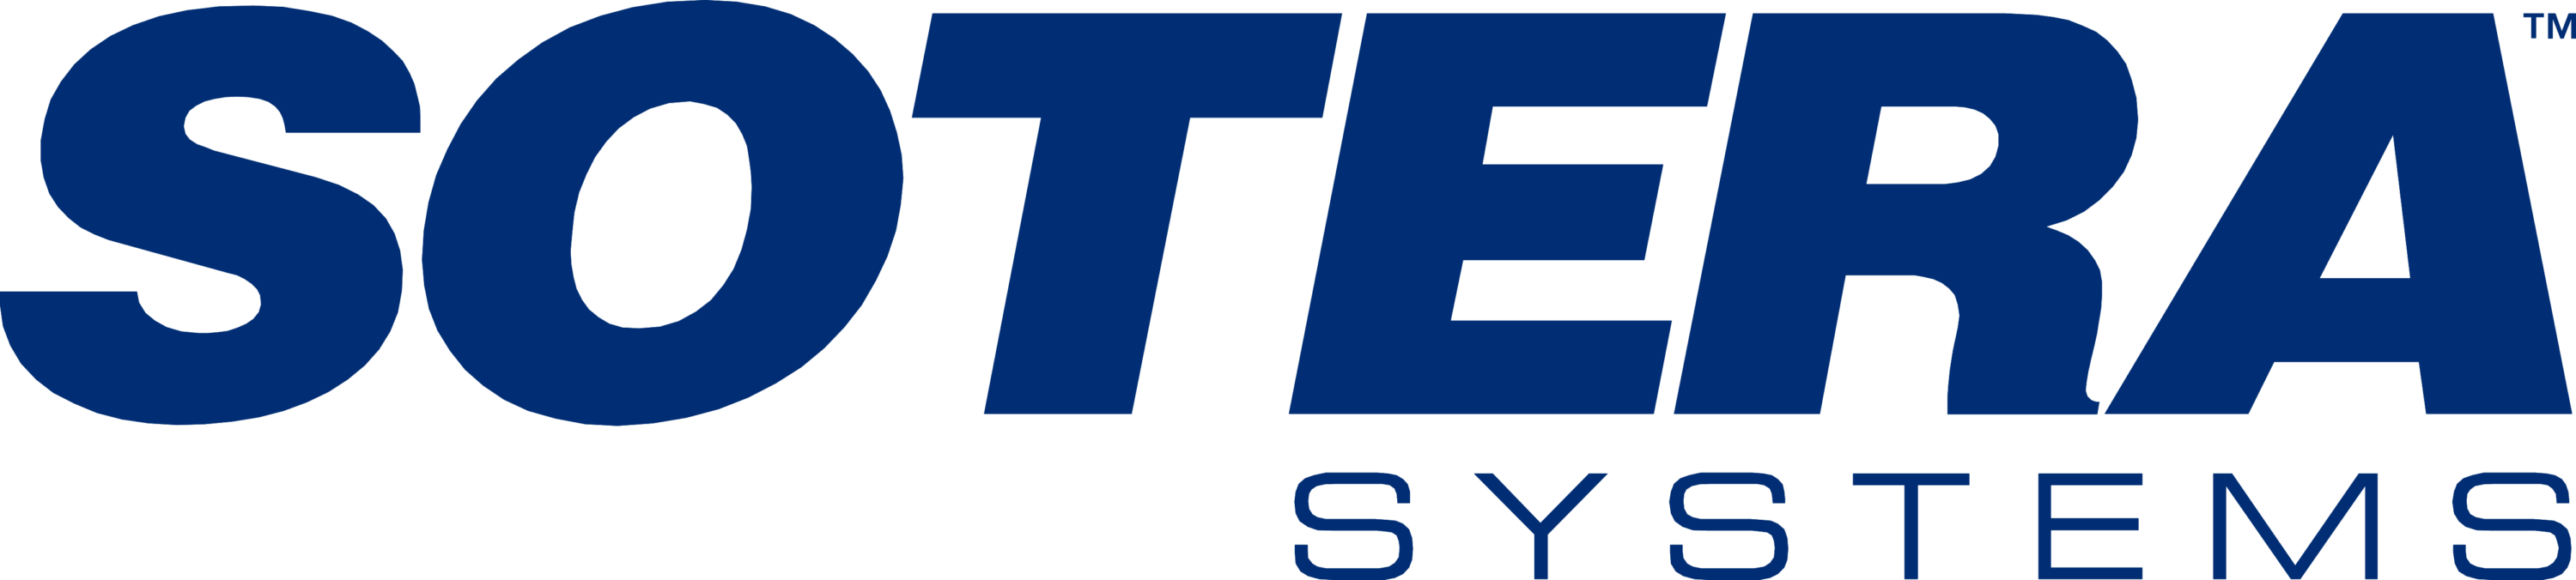 Sotera Systems Logo